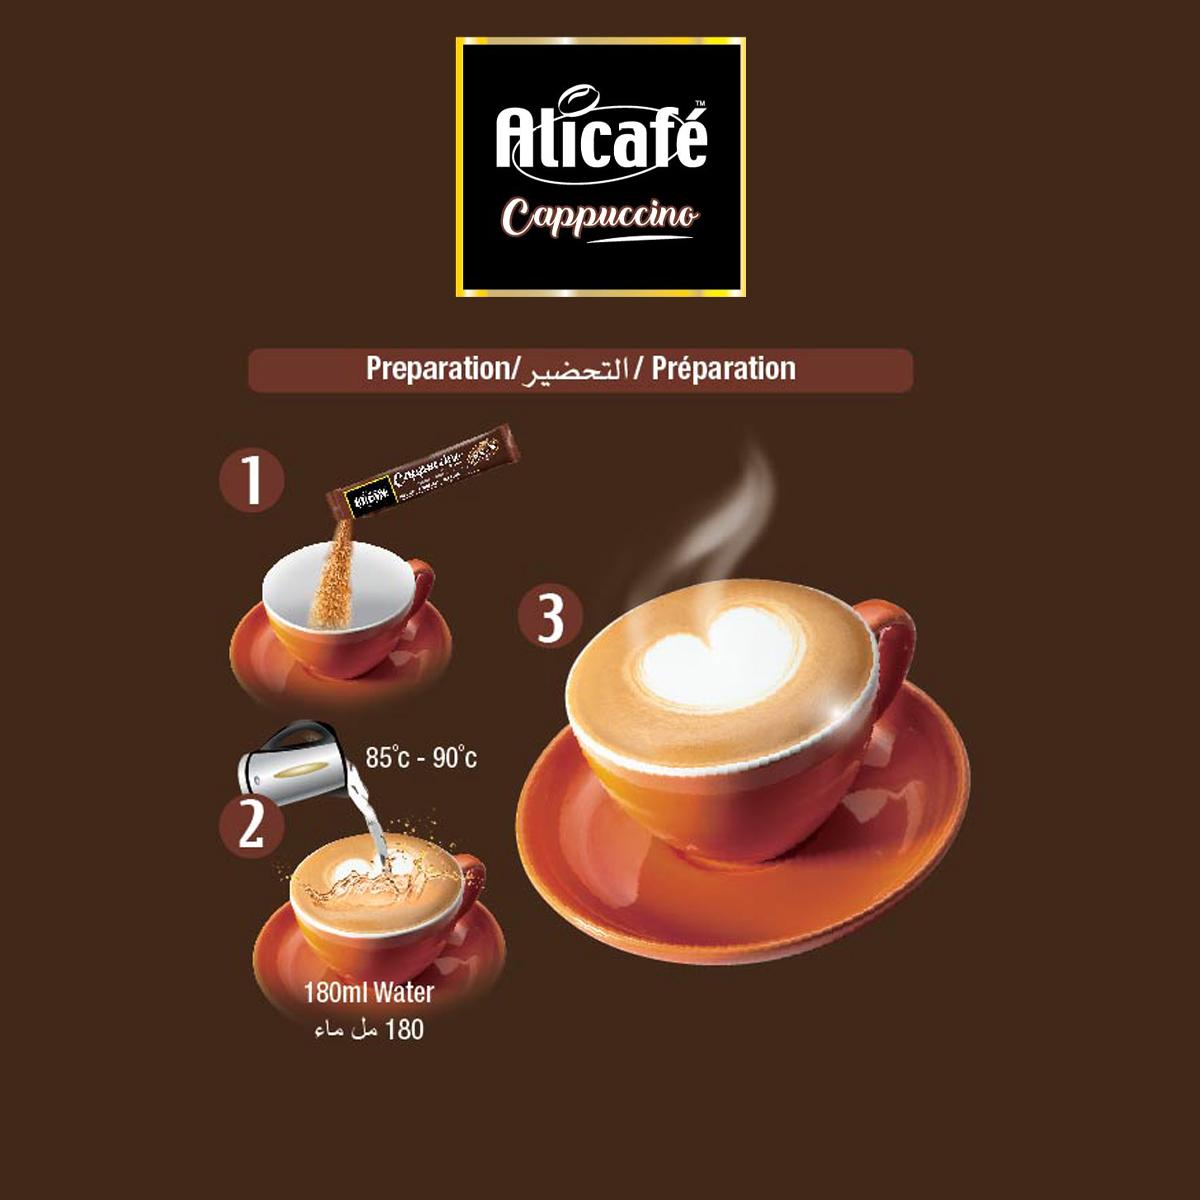 Alicafé Cappuccino With Ginseng